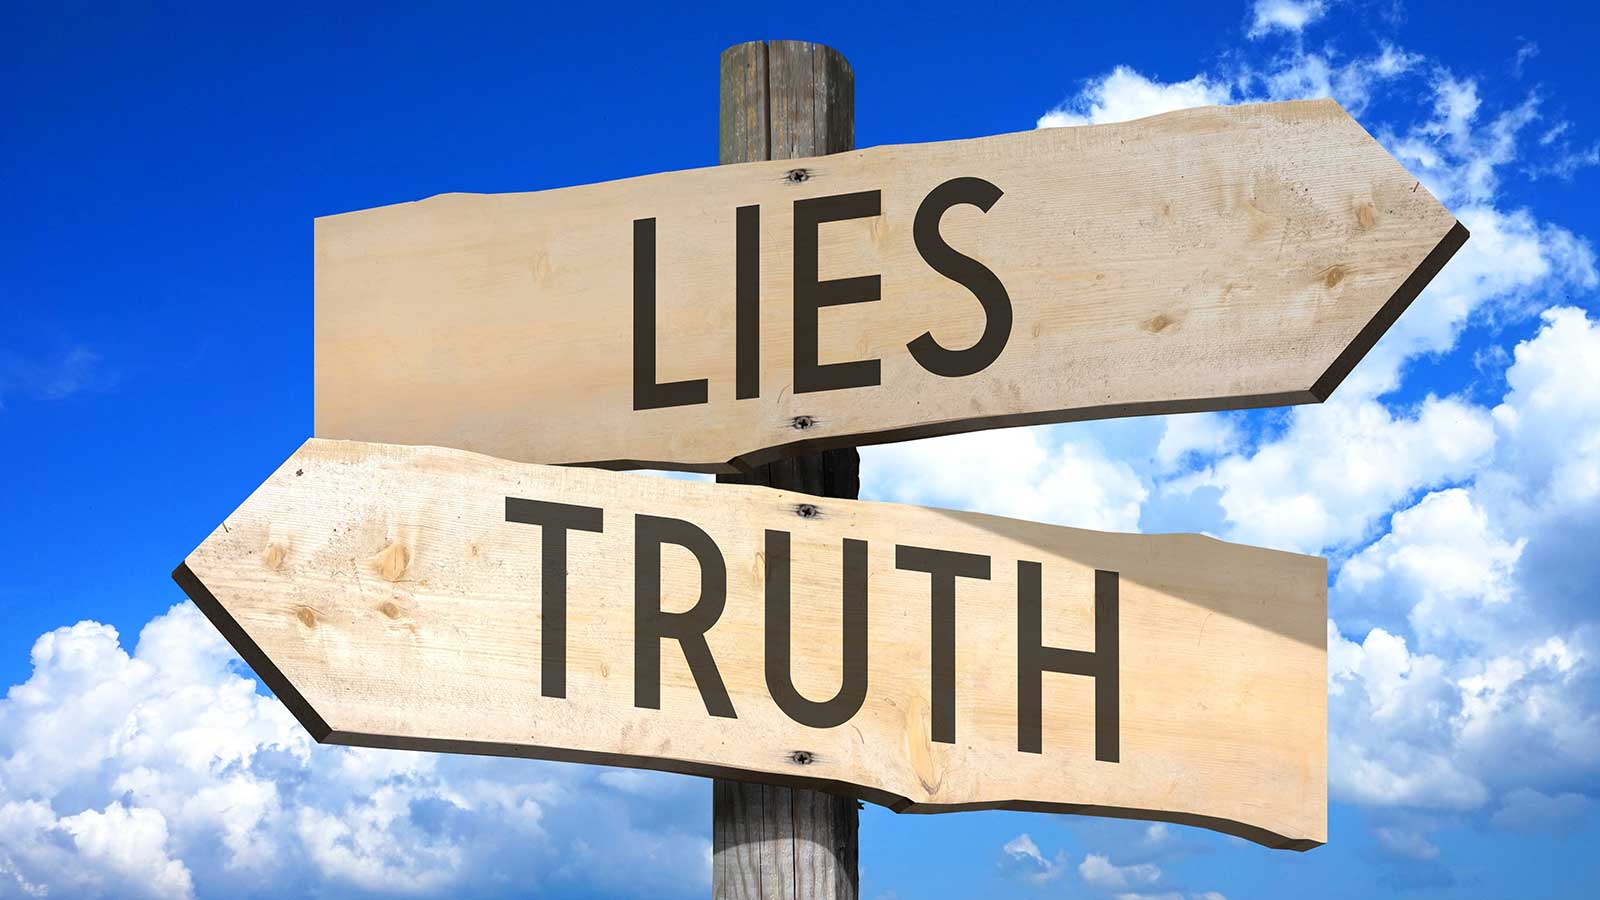 Lies, truth wooden signpost